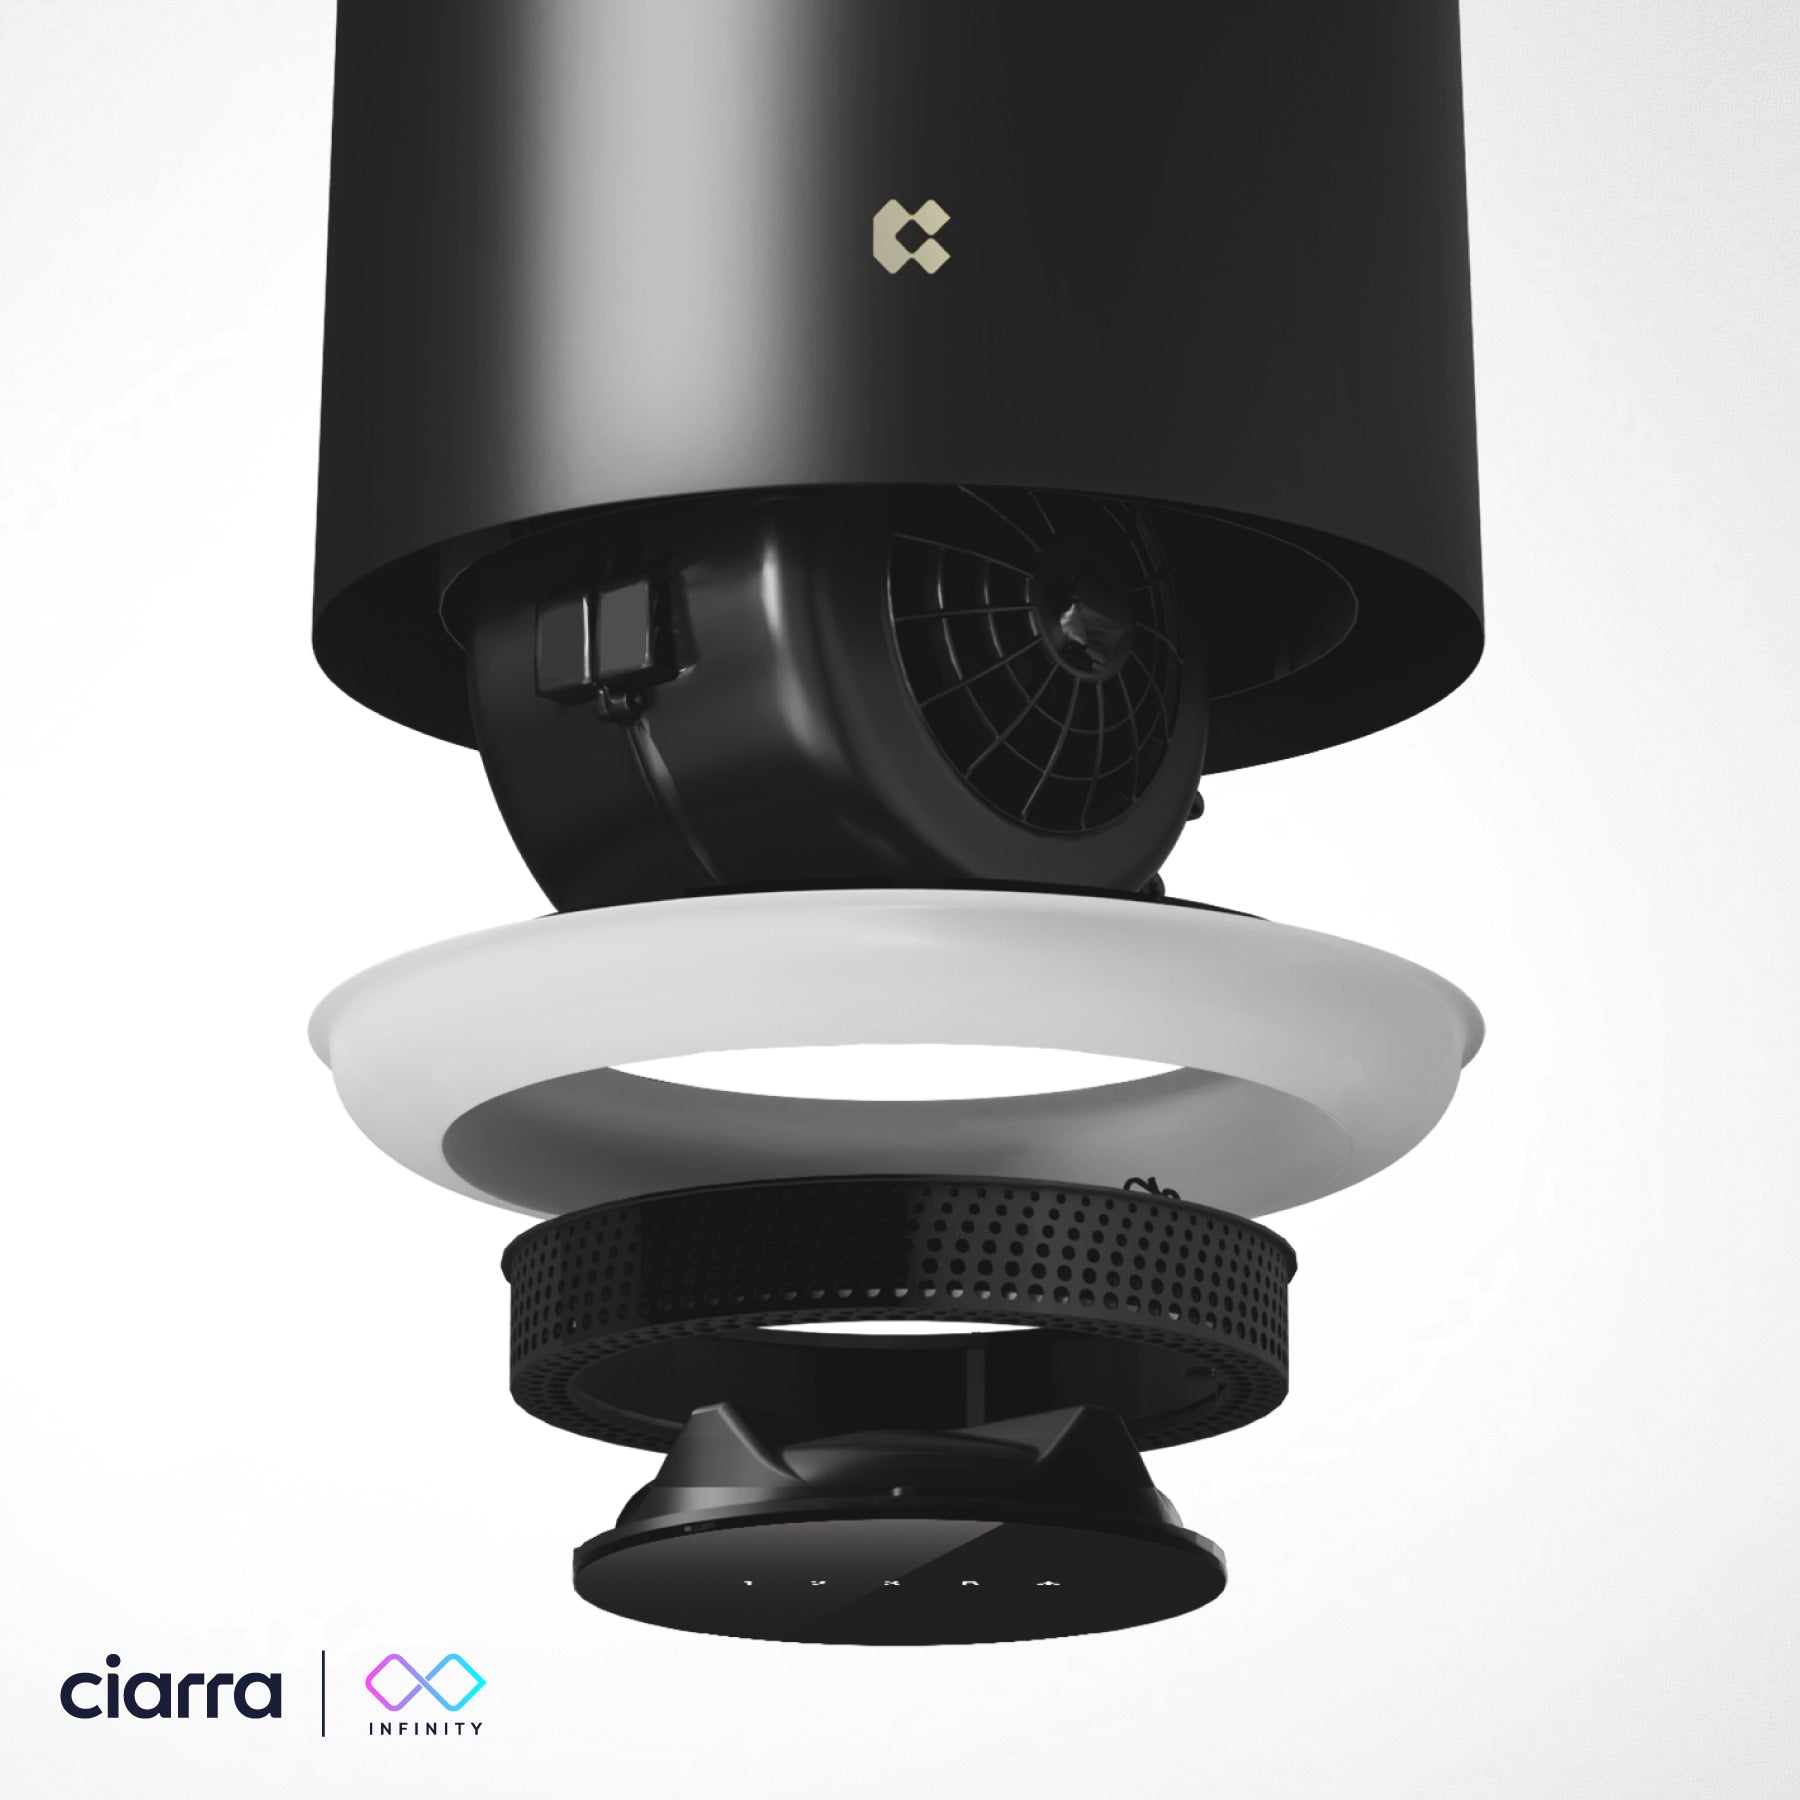 Ciarra INFINITY Intelligente Plasma Îlot Hotte CBCB4833-OW